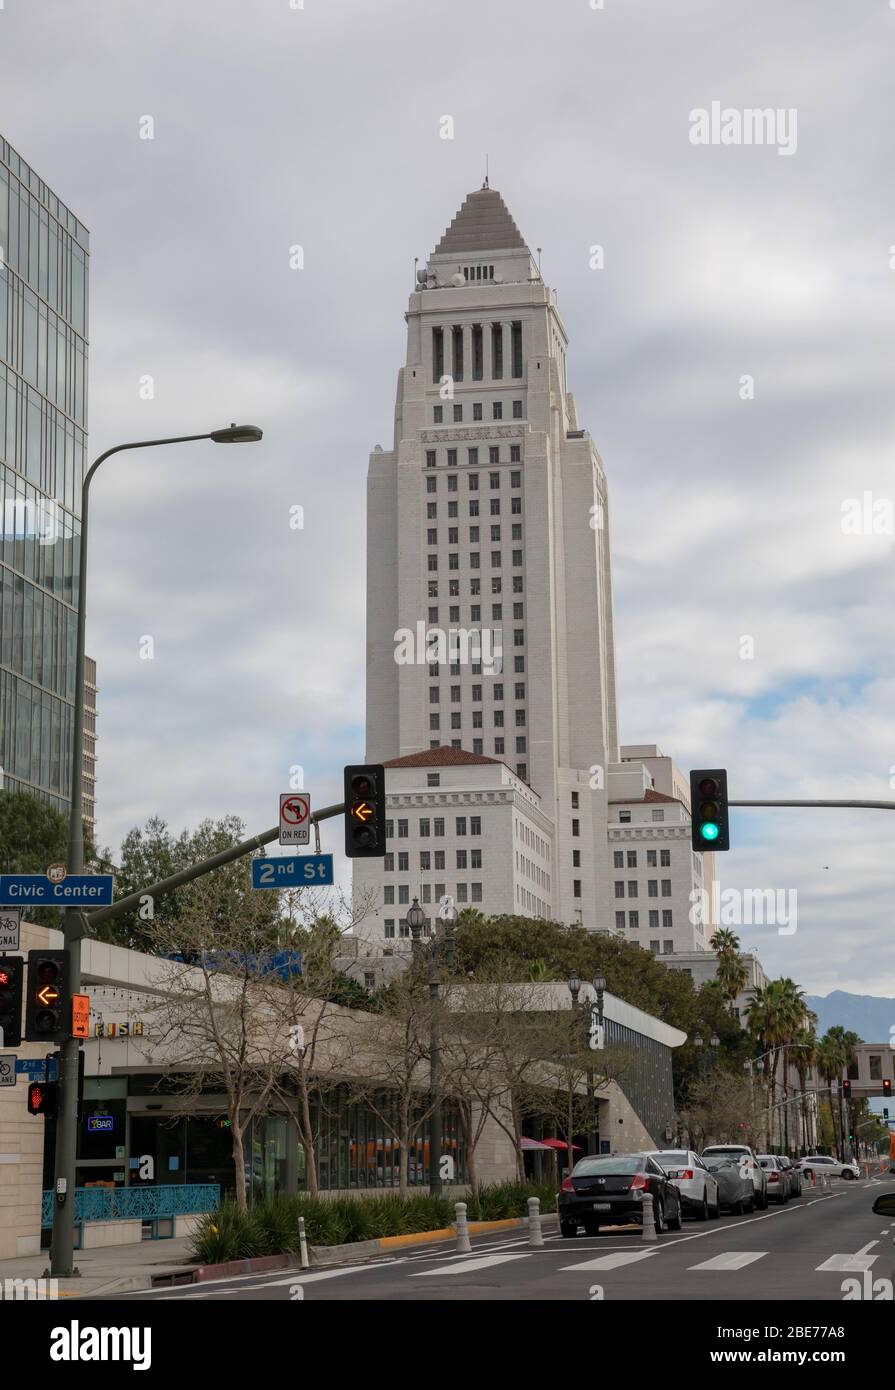 Die Ecke der San Pedro Straße im Skid Row Bezirk der Innenstadt von Los Angeles, CA am 20. März 2020. Stockfoto